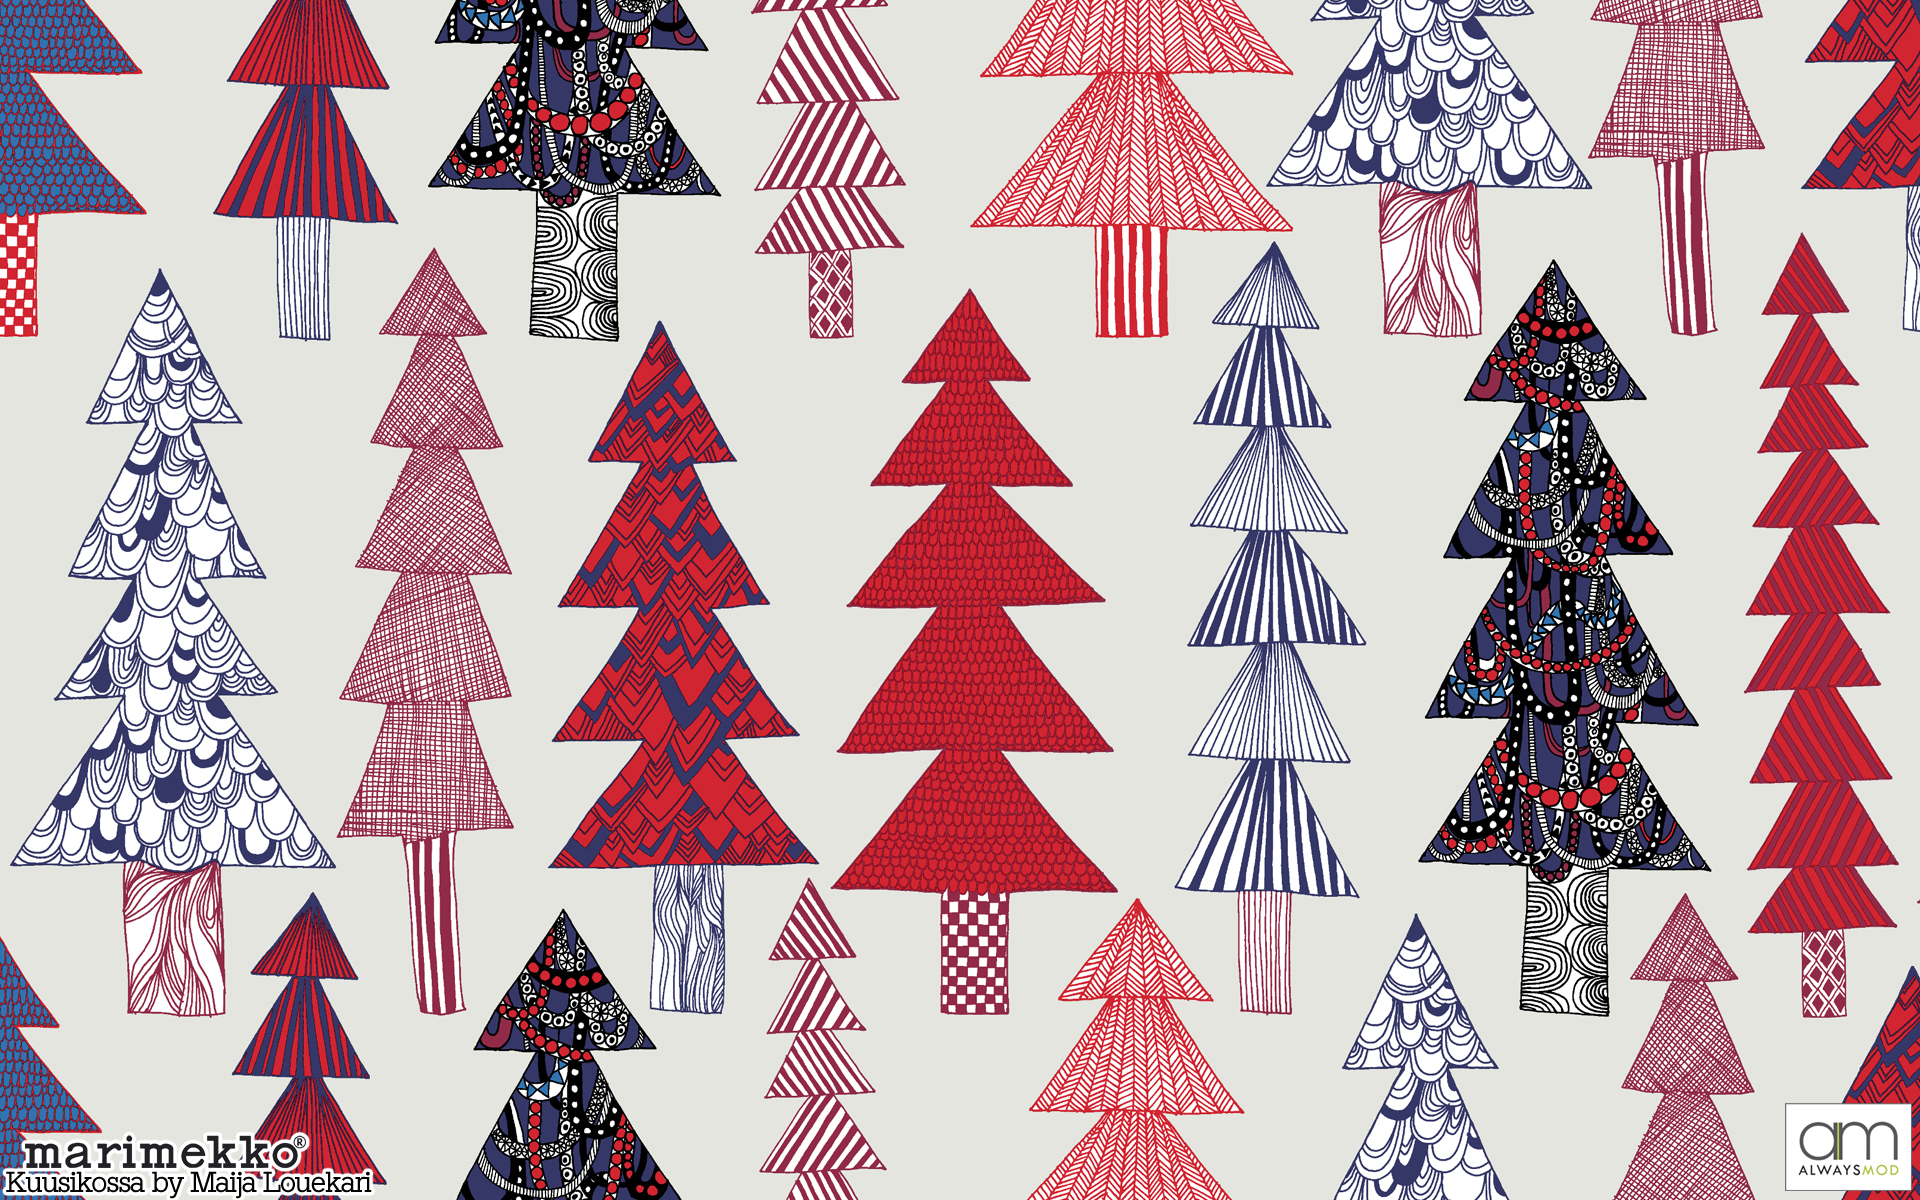 50 Marimekko Wallpaper Designs Wallpapersafari